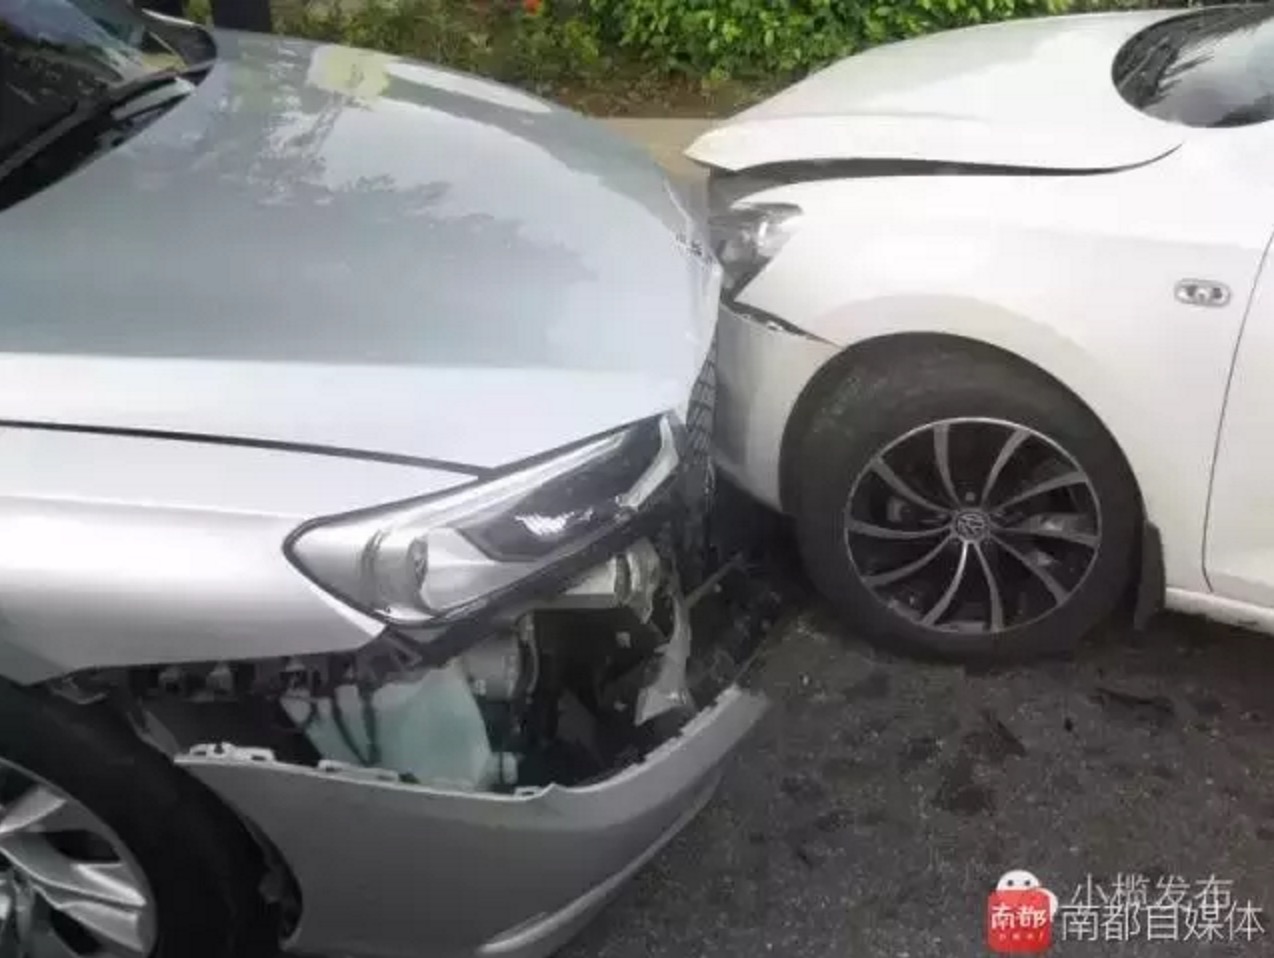 car-crash-aftermath.jpg